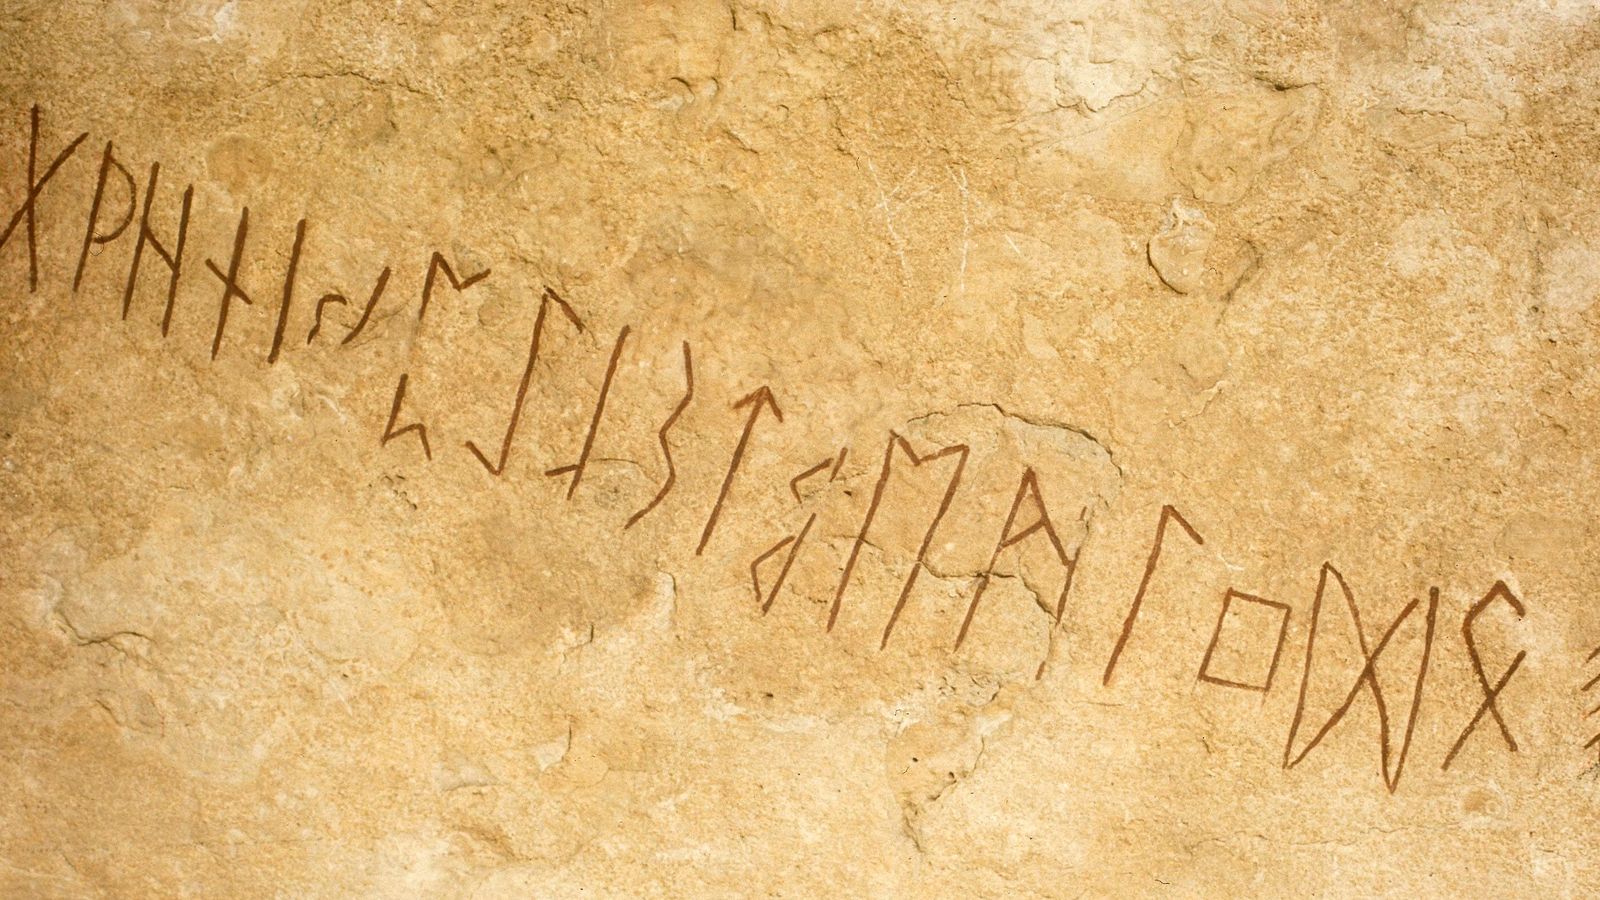 Oppsiktsvekkende funn: verdens eldste runestein oppdaget i Norge